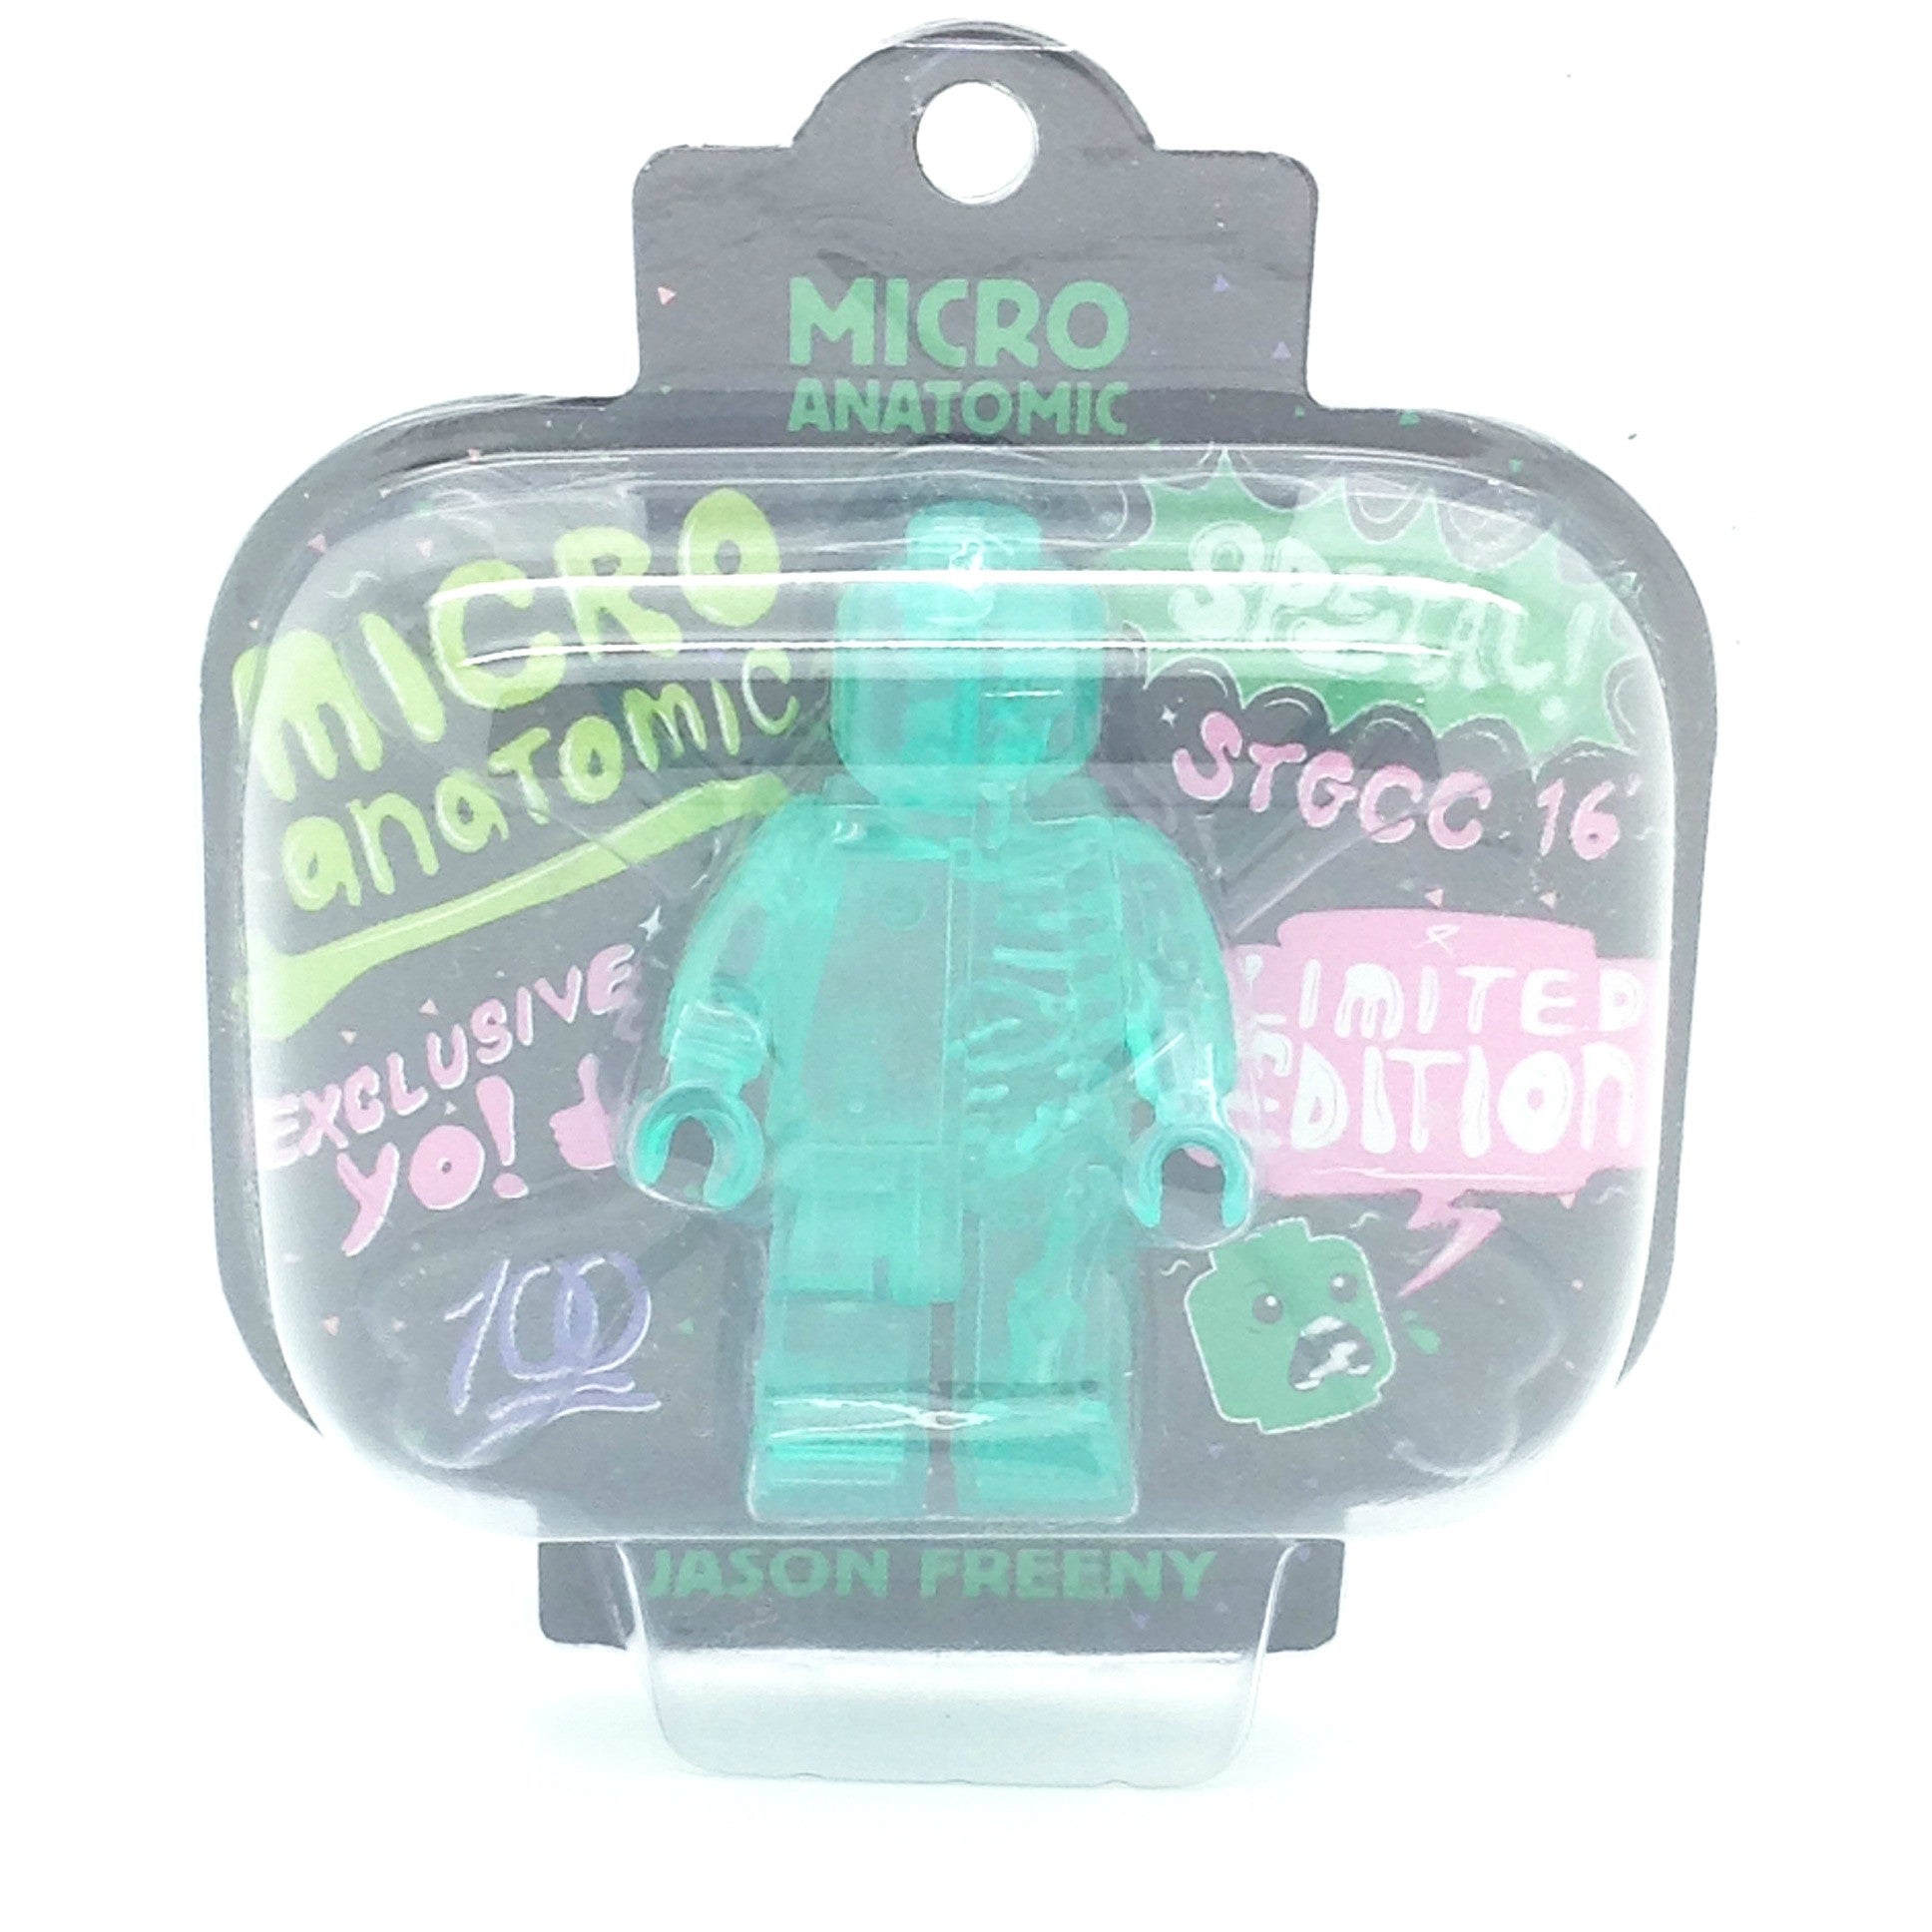 Micro Anatomic Green Figure by Jason Freeny STGCC 2016 Edition